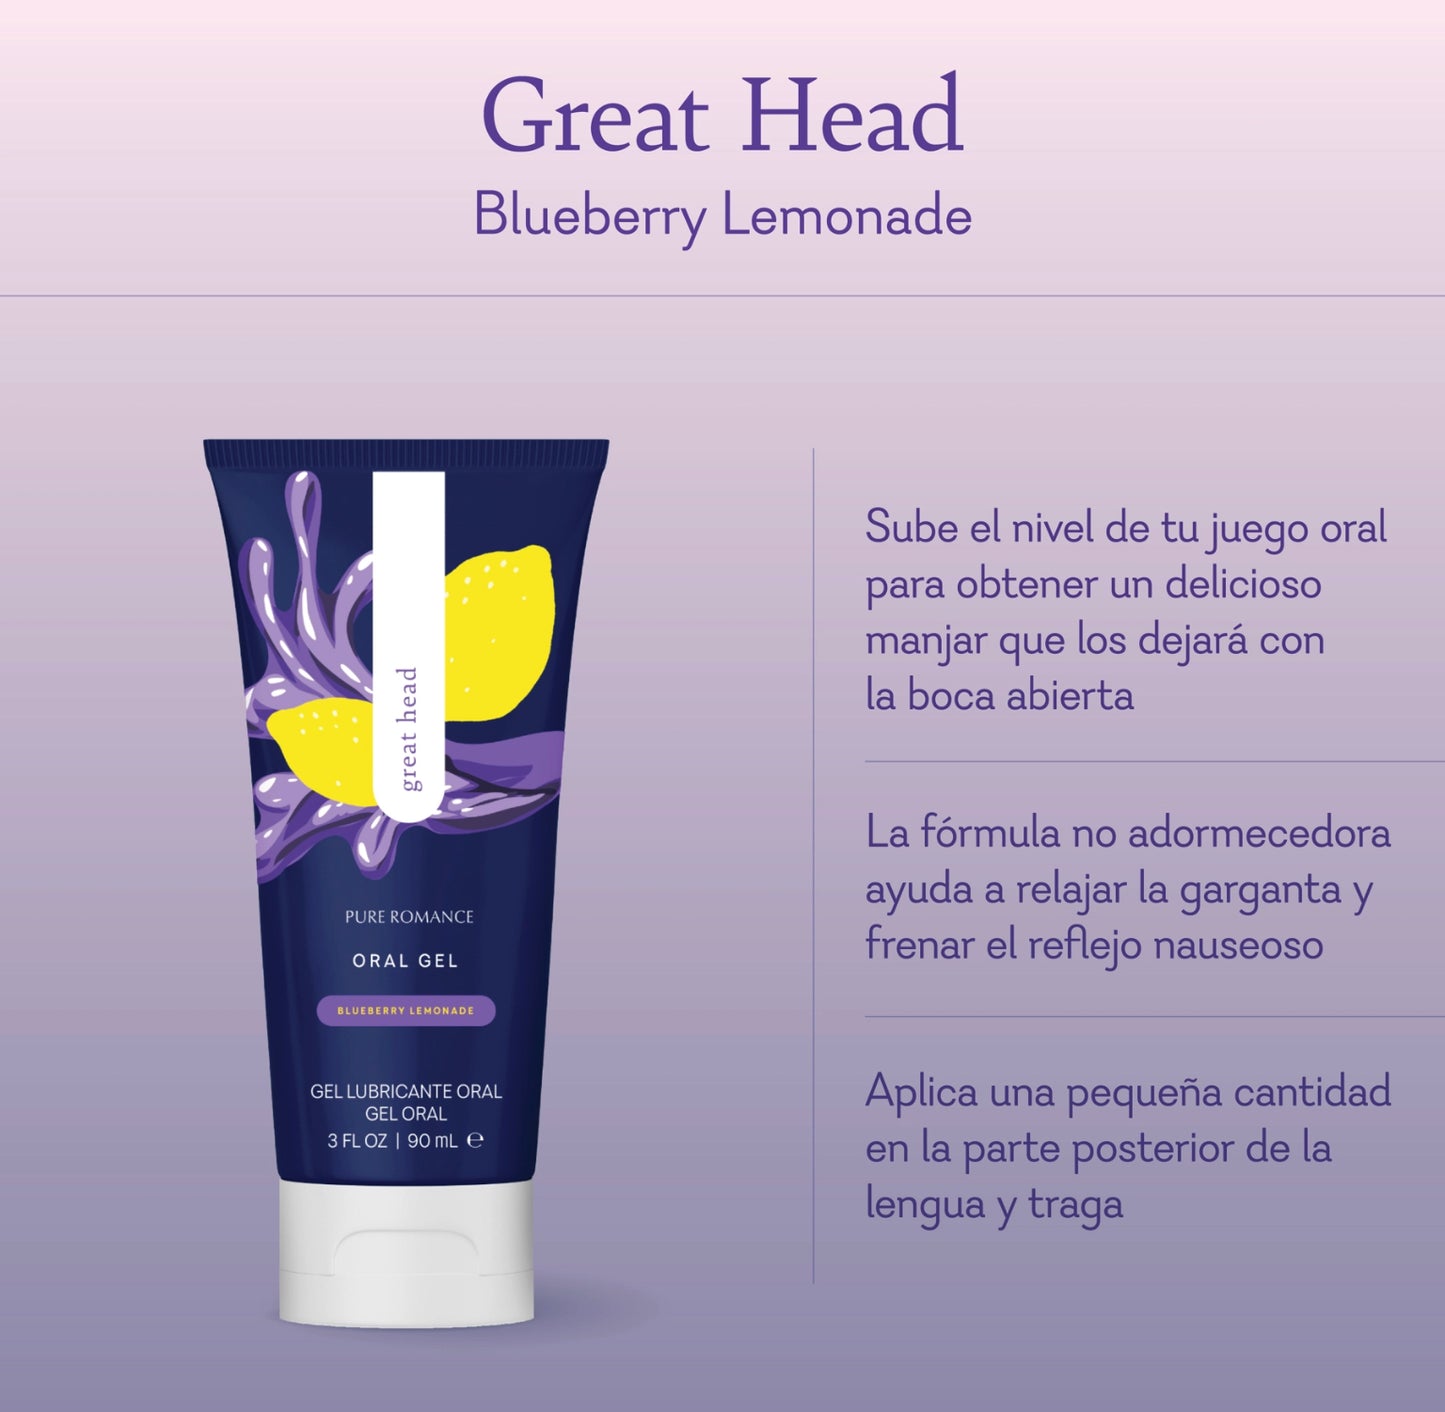 Great Head Blueberry Lemonade